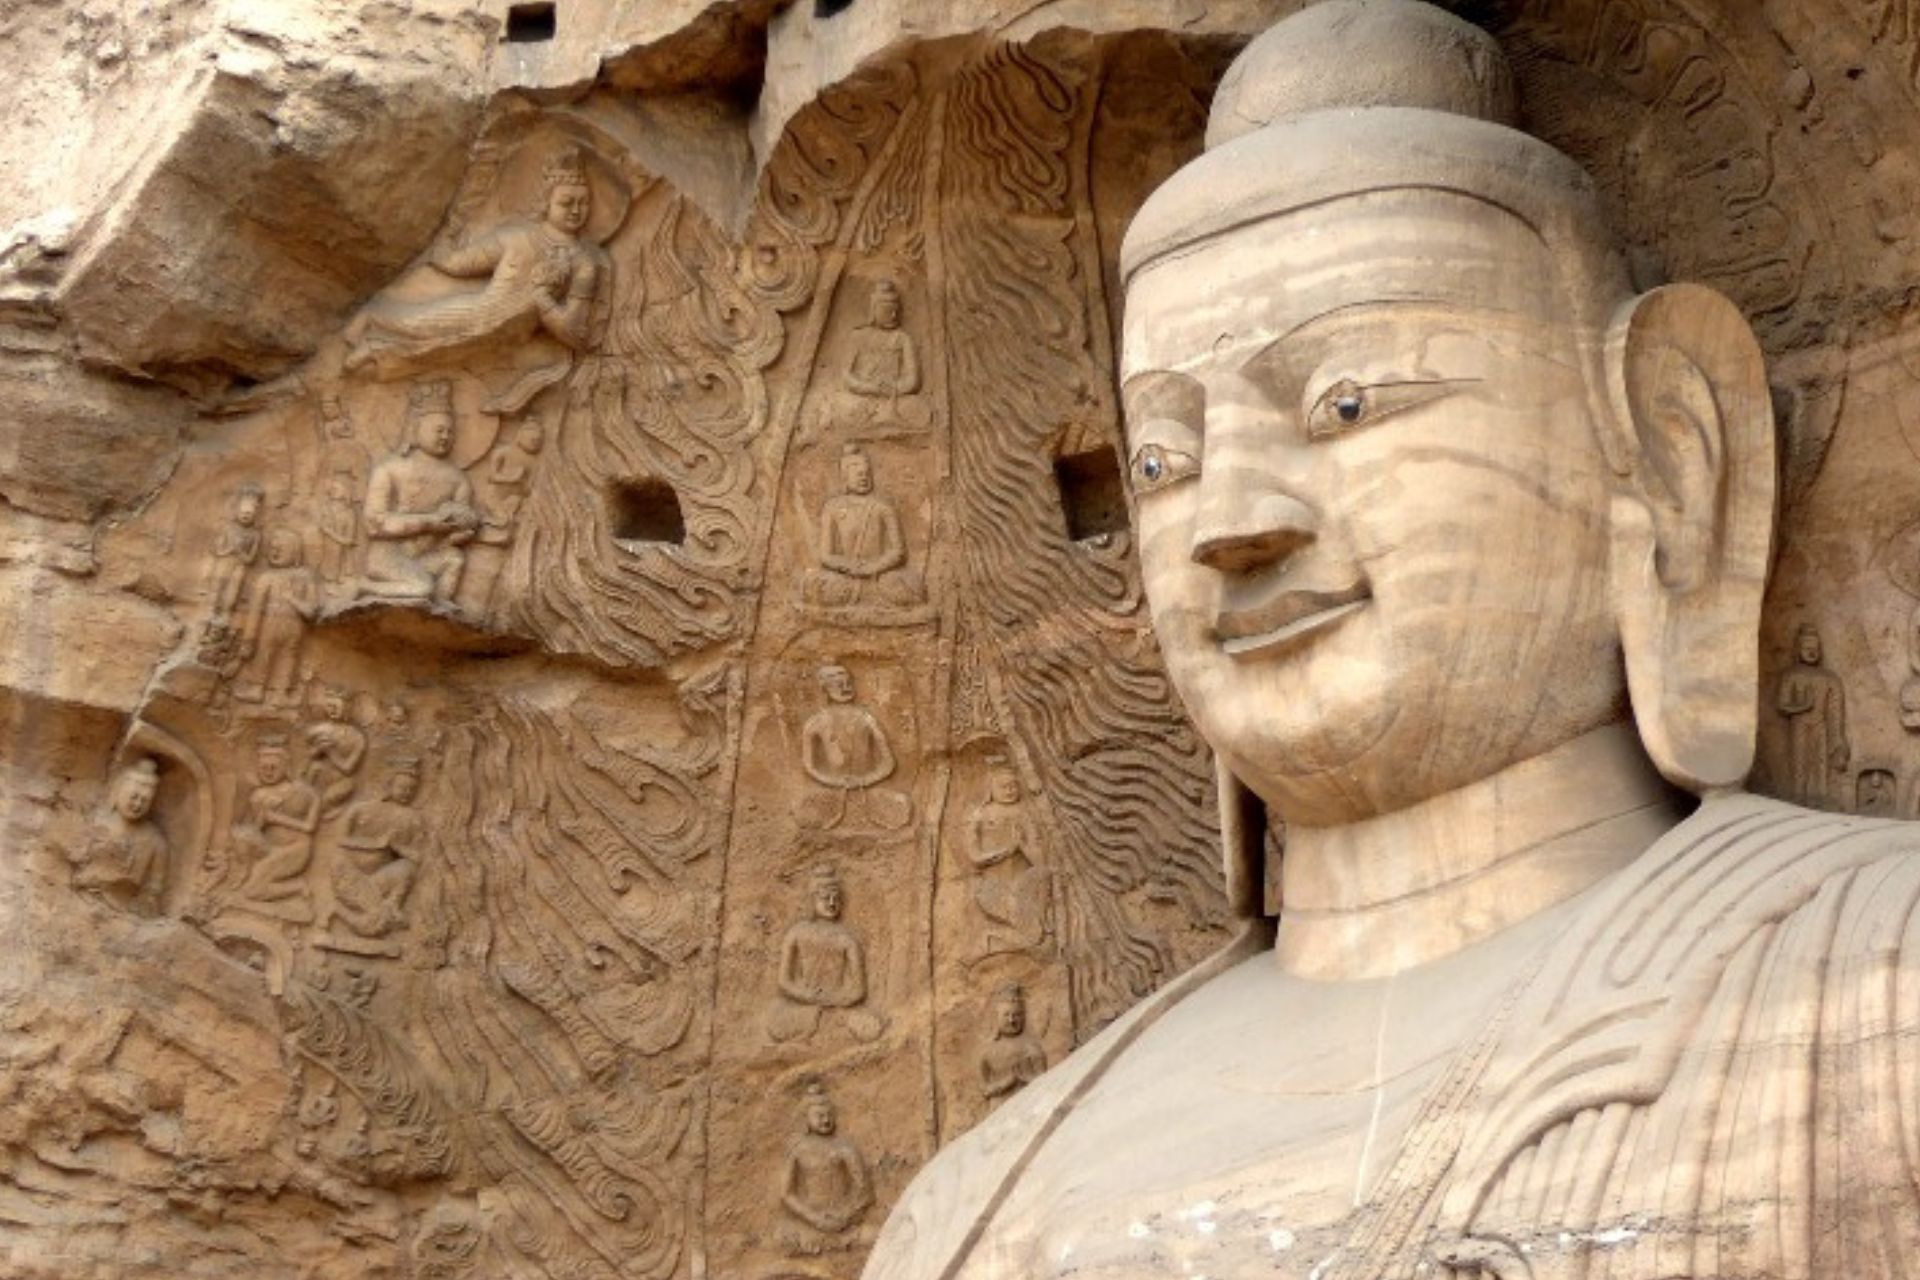 Cabeza y parte superior del torso de Buda excavado en piedra